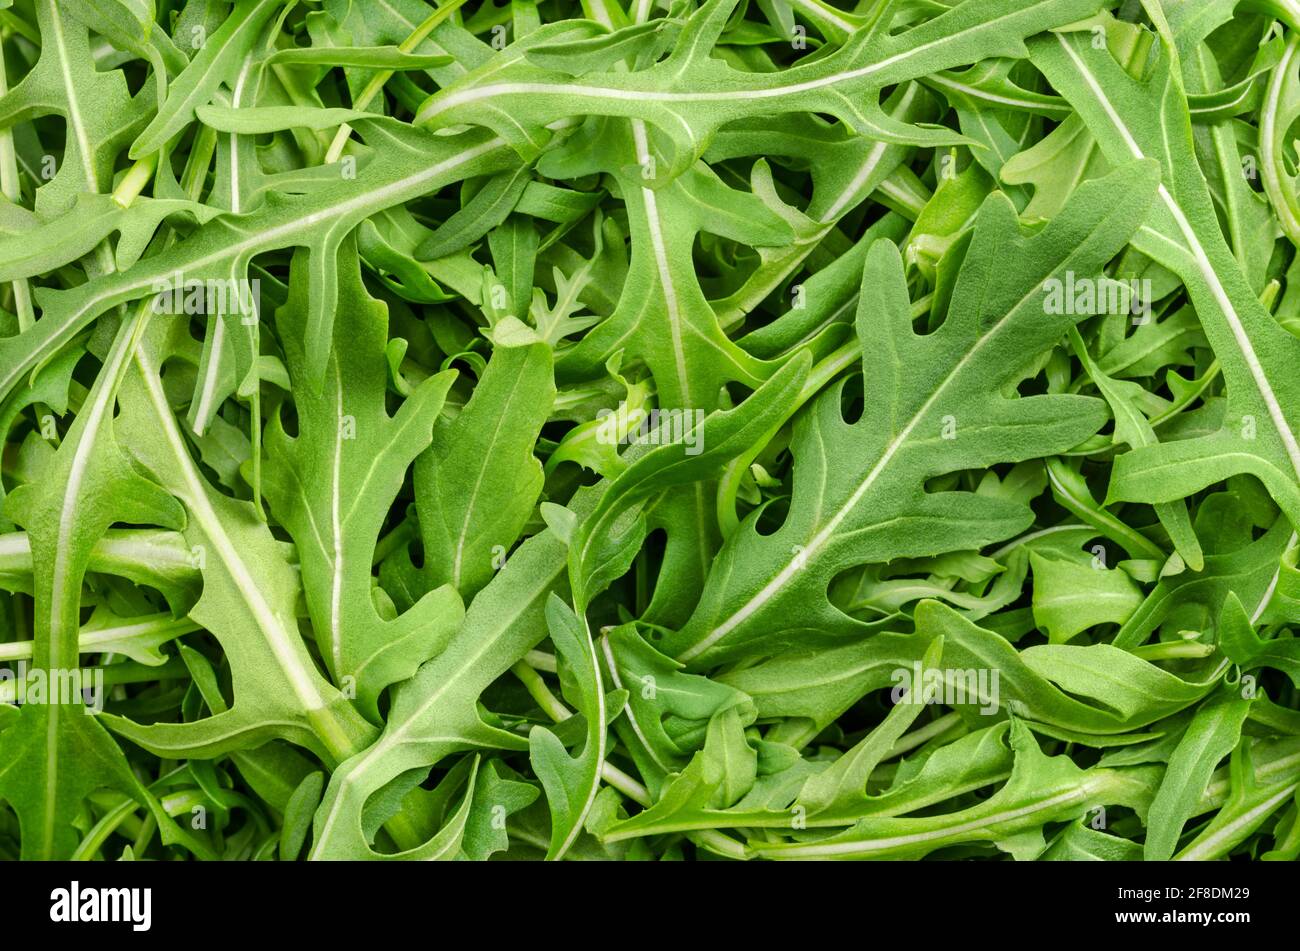 Rohe und frische Rucola, grüne Blätter von oben. Draufsicht auf Rucola-Salat, Eruca vesicaria, Pflanze, verwendet als Blattgemüse, Salatgemüse und Garnierung. Stockfoto